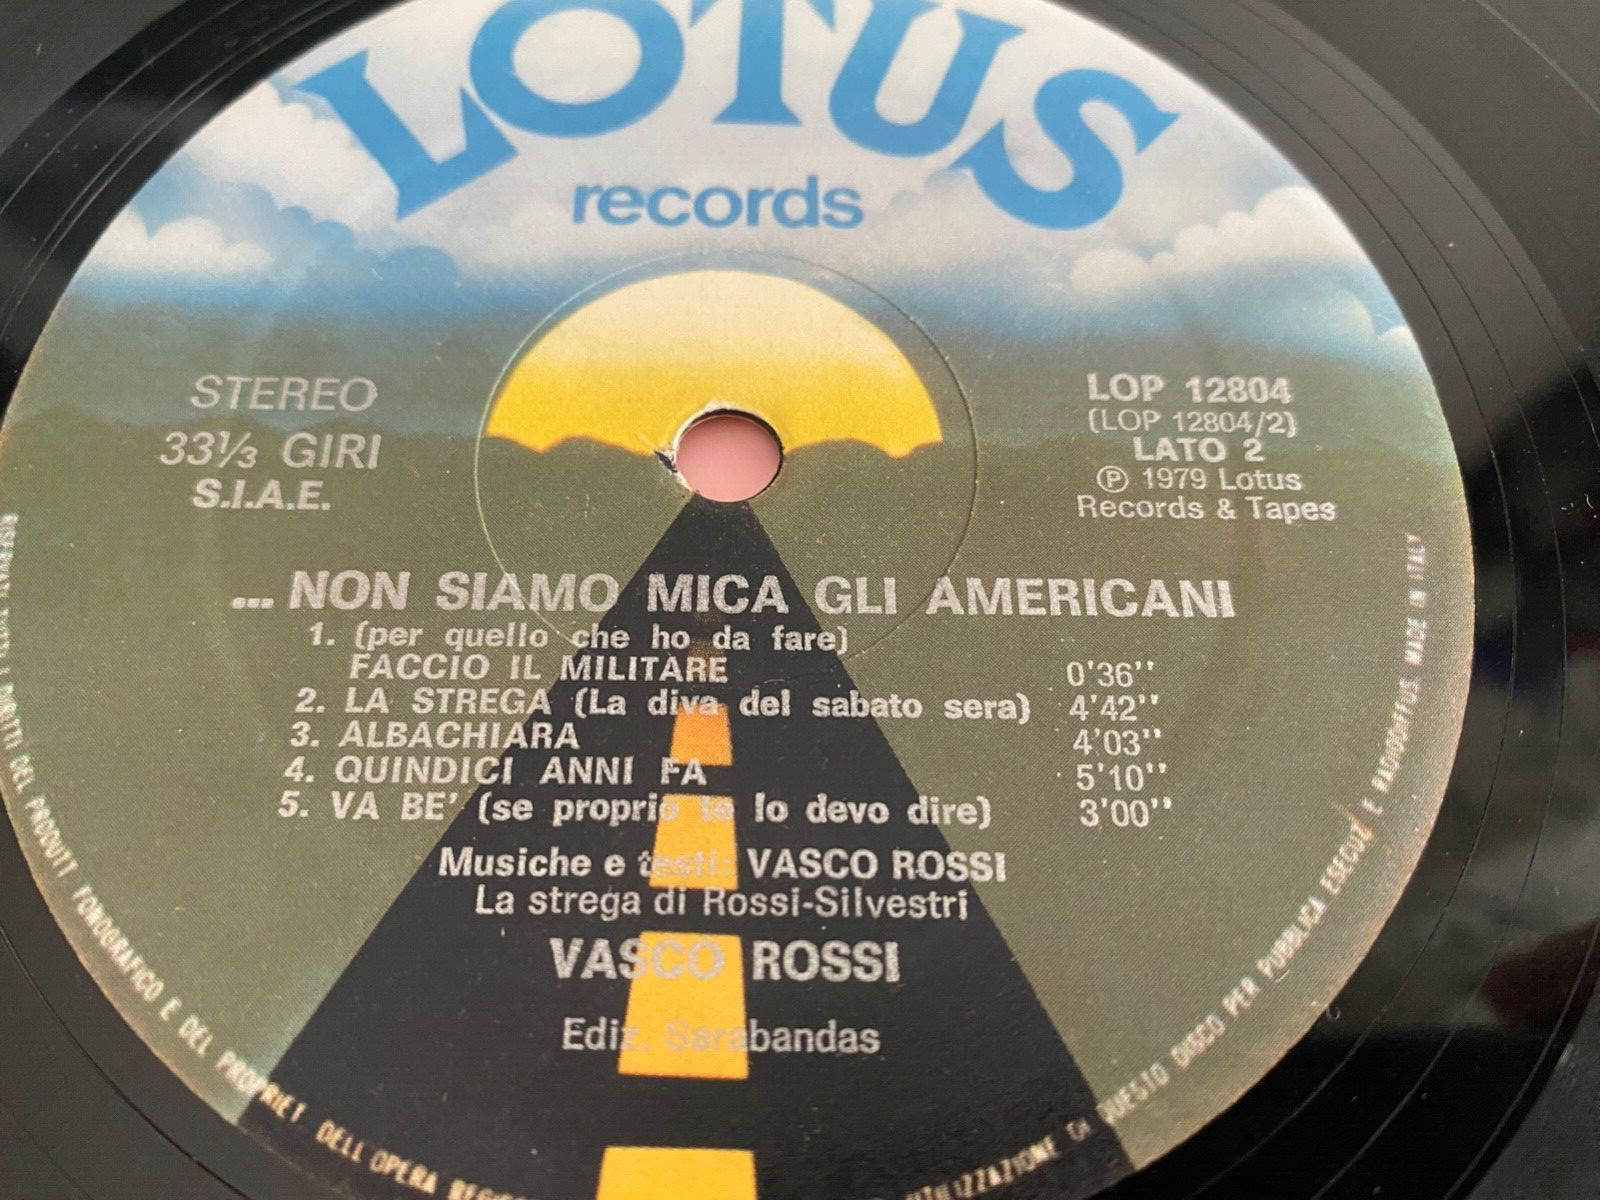 LP VASCO ROSSI  NON SIAMO MICA GLI AMERICANI  FIRST  ITALY 1979 LOTUS LOP 12804